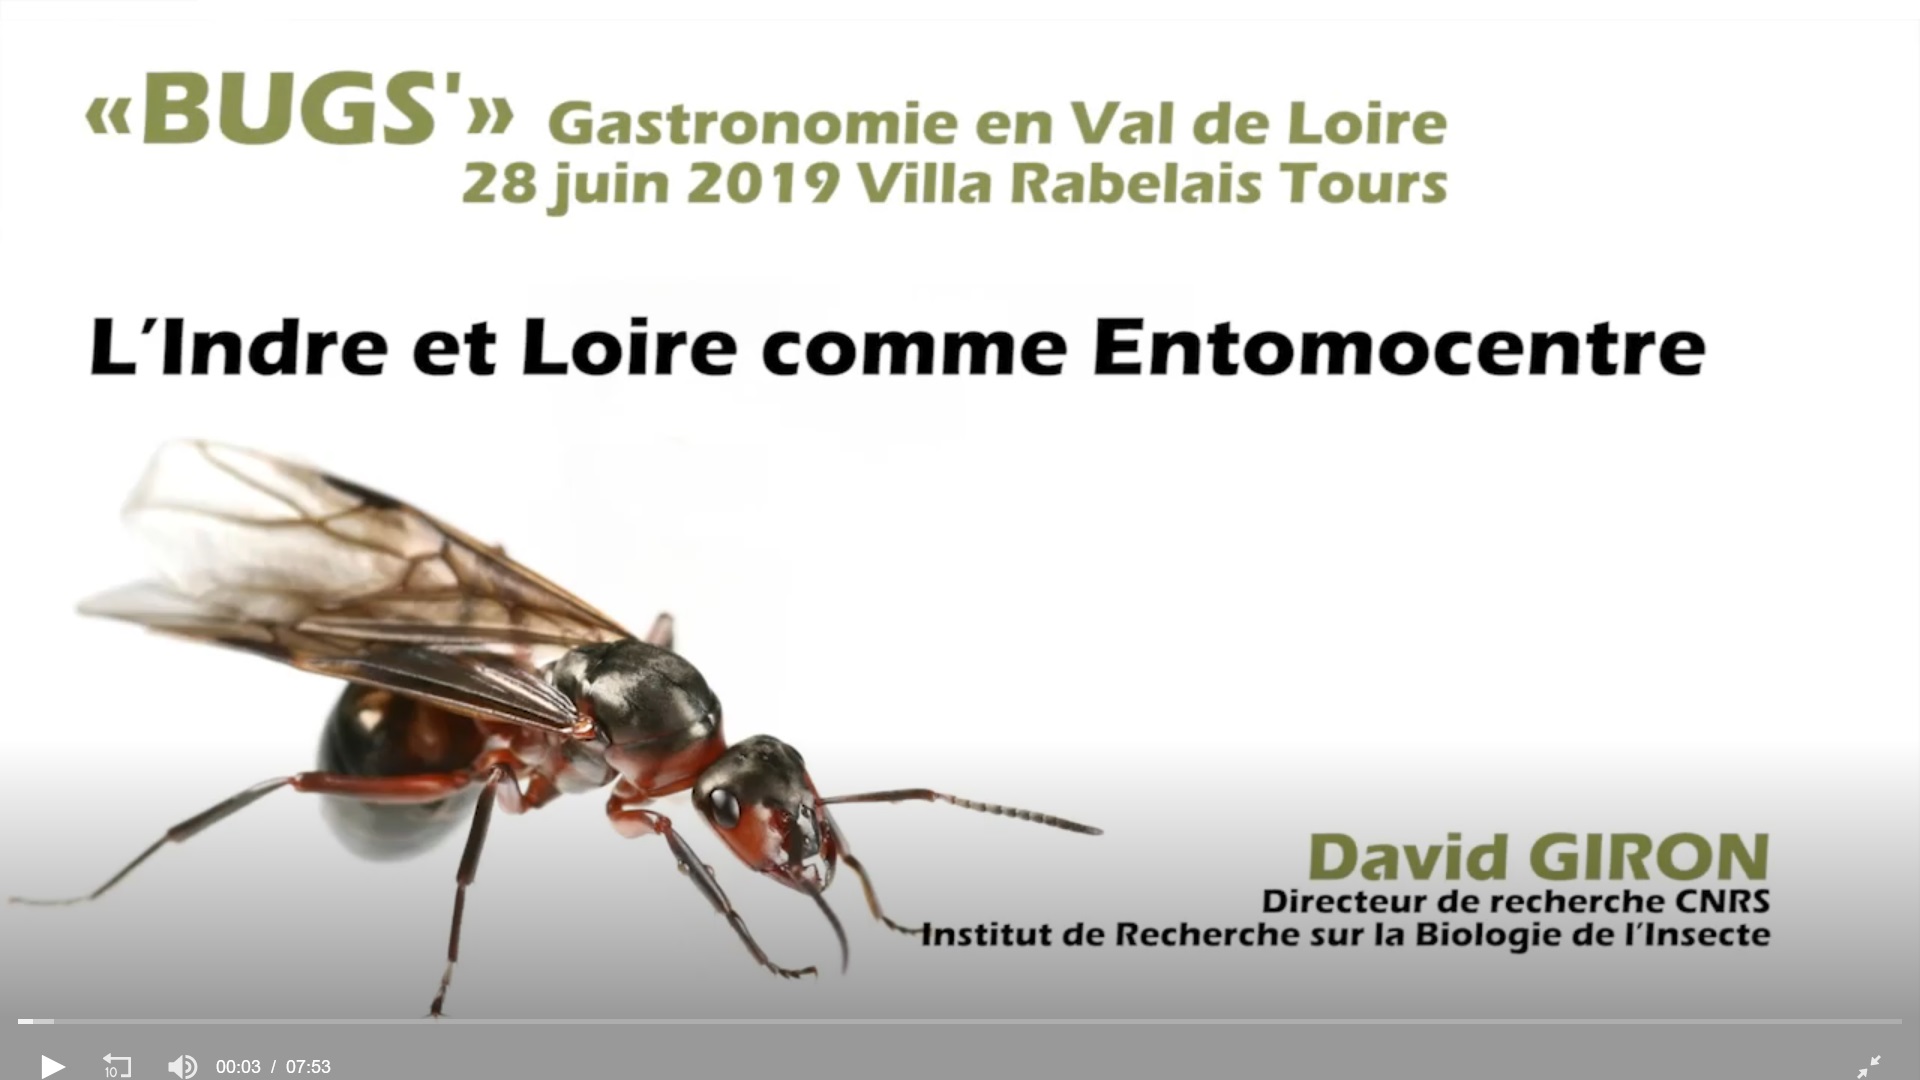 L'Indre et Loire comme Entomocentre